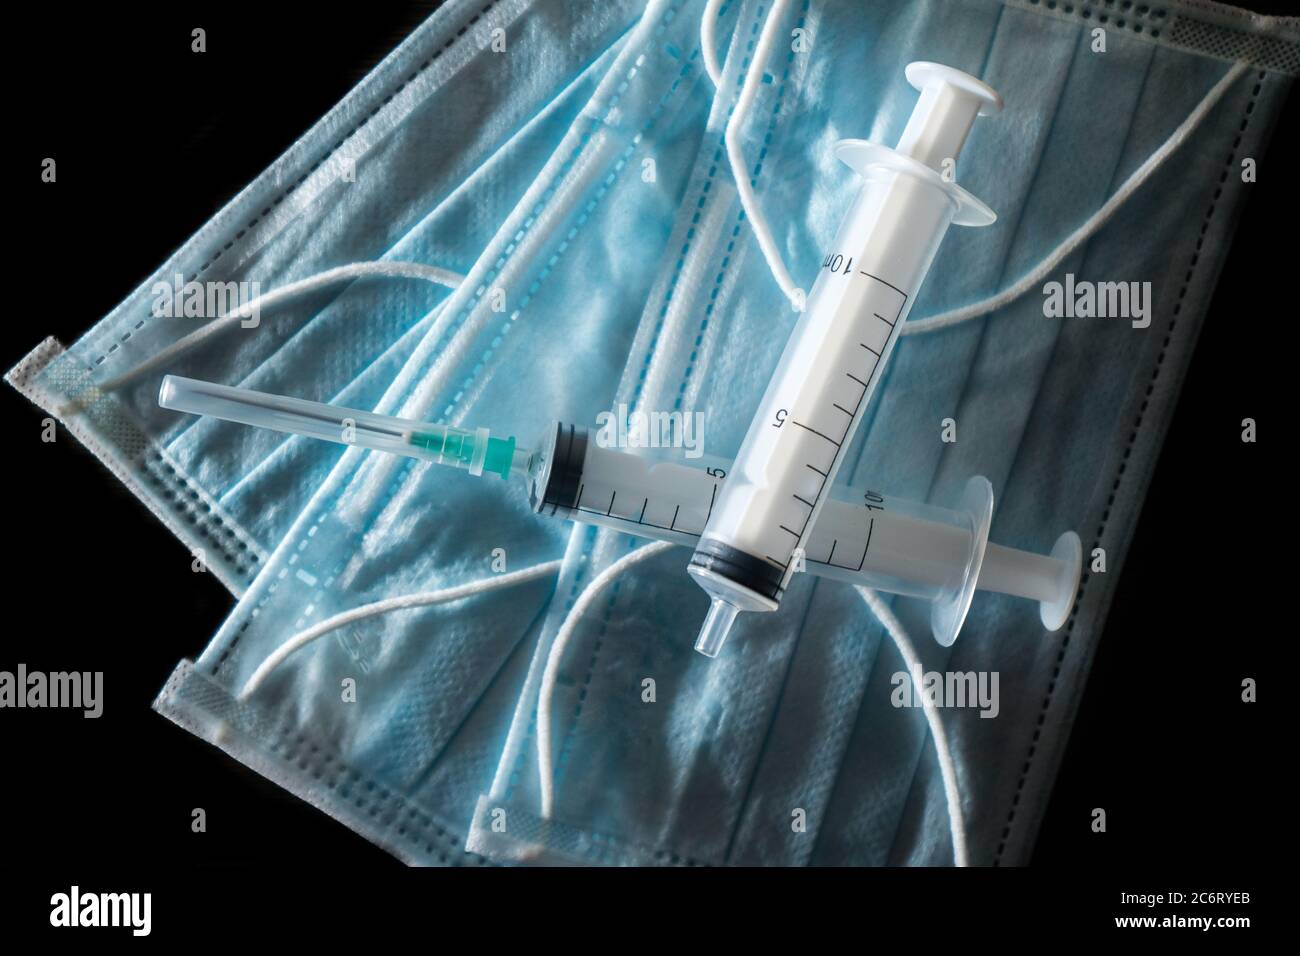 Medical mask and syringes. Coronovirus covid-19 2019-ncov epidemic  Stock Photo